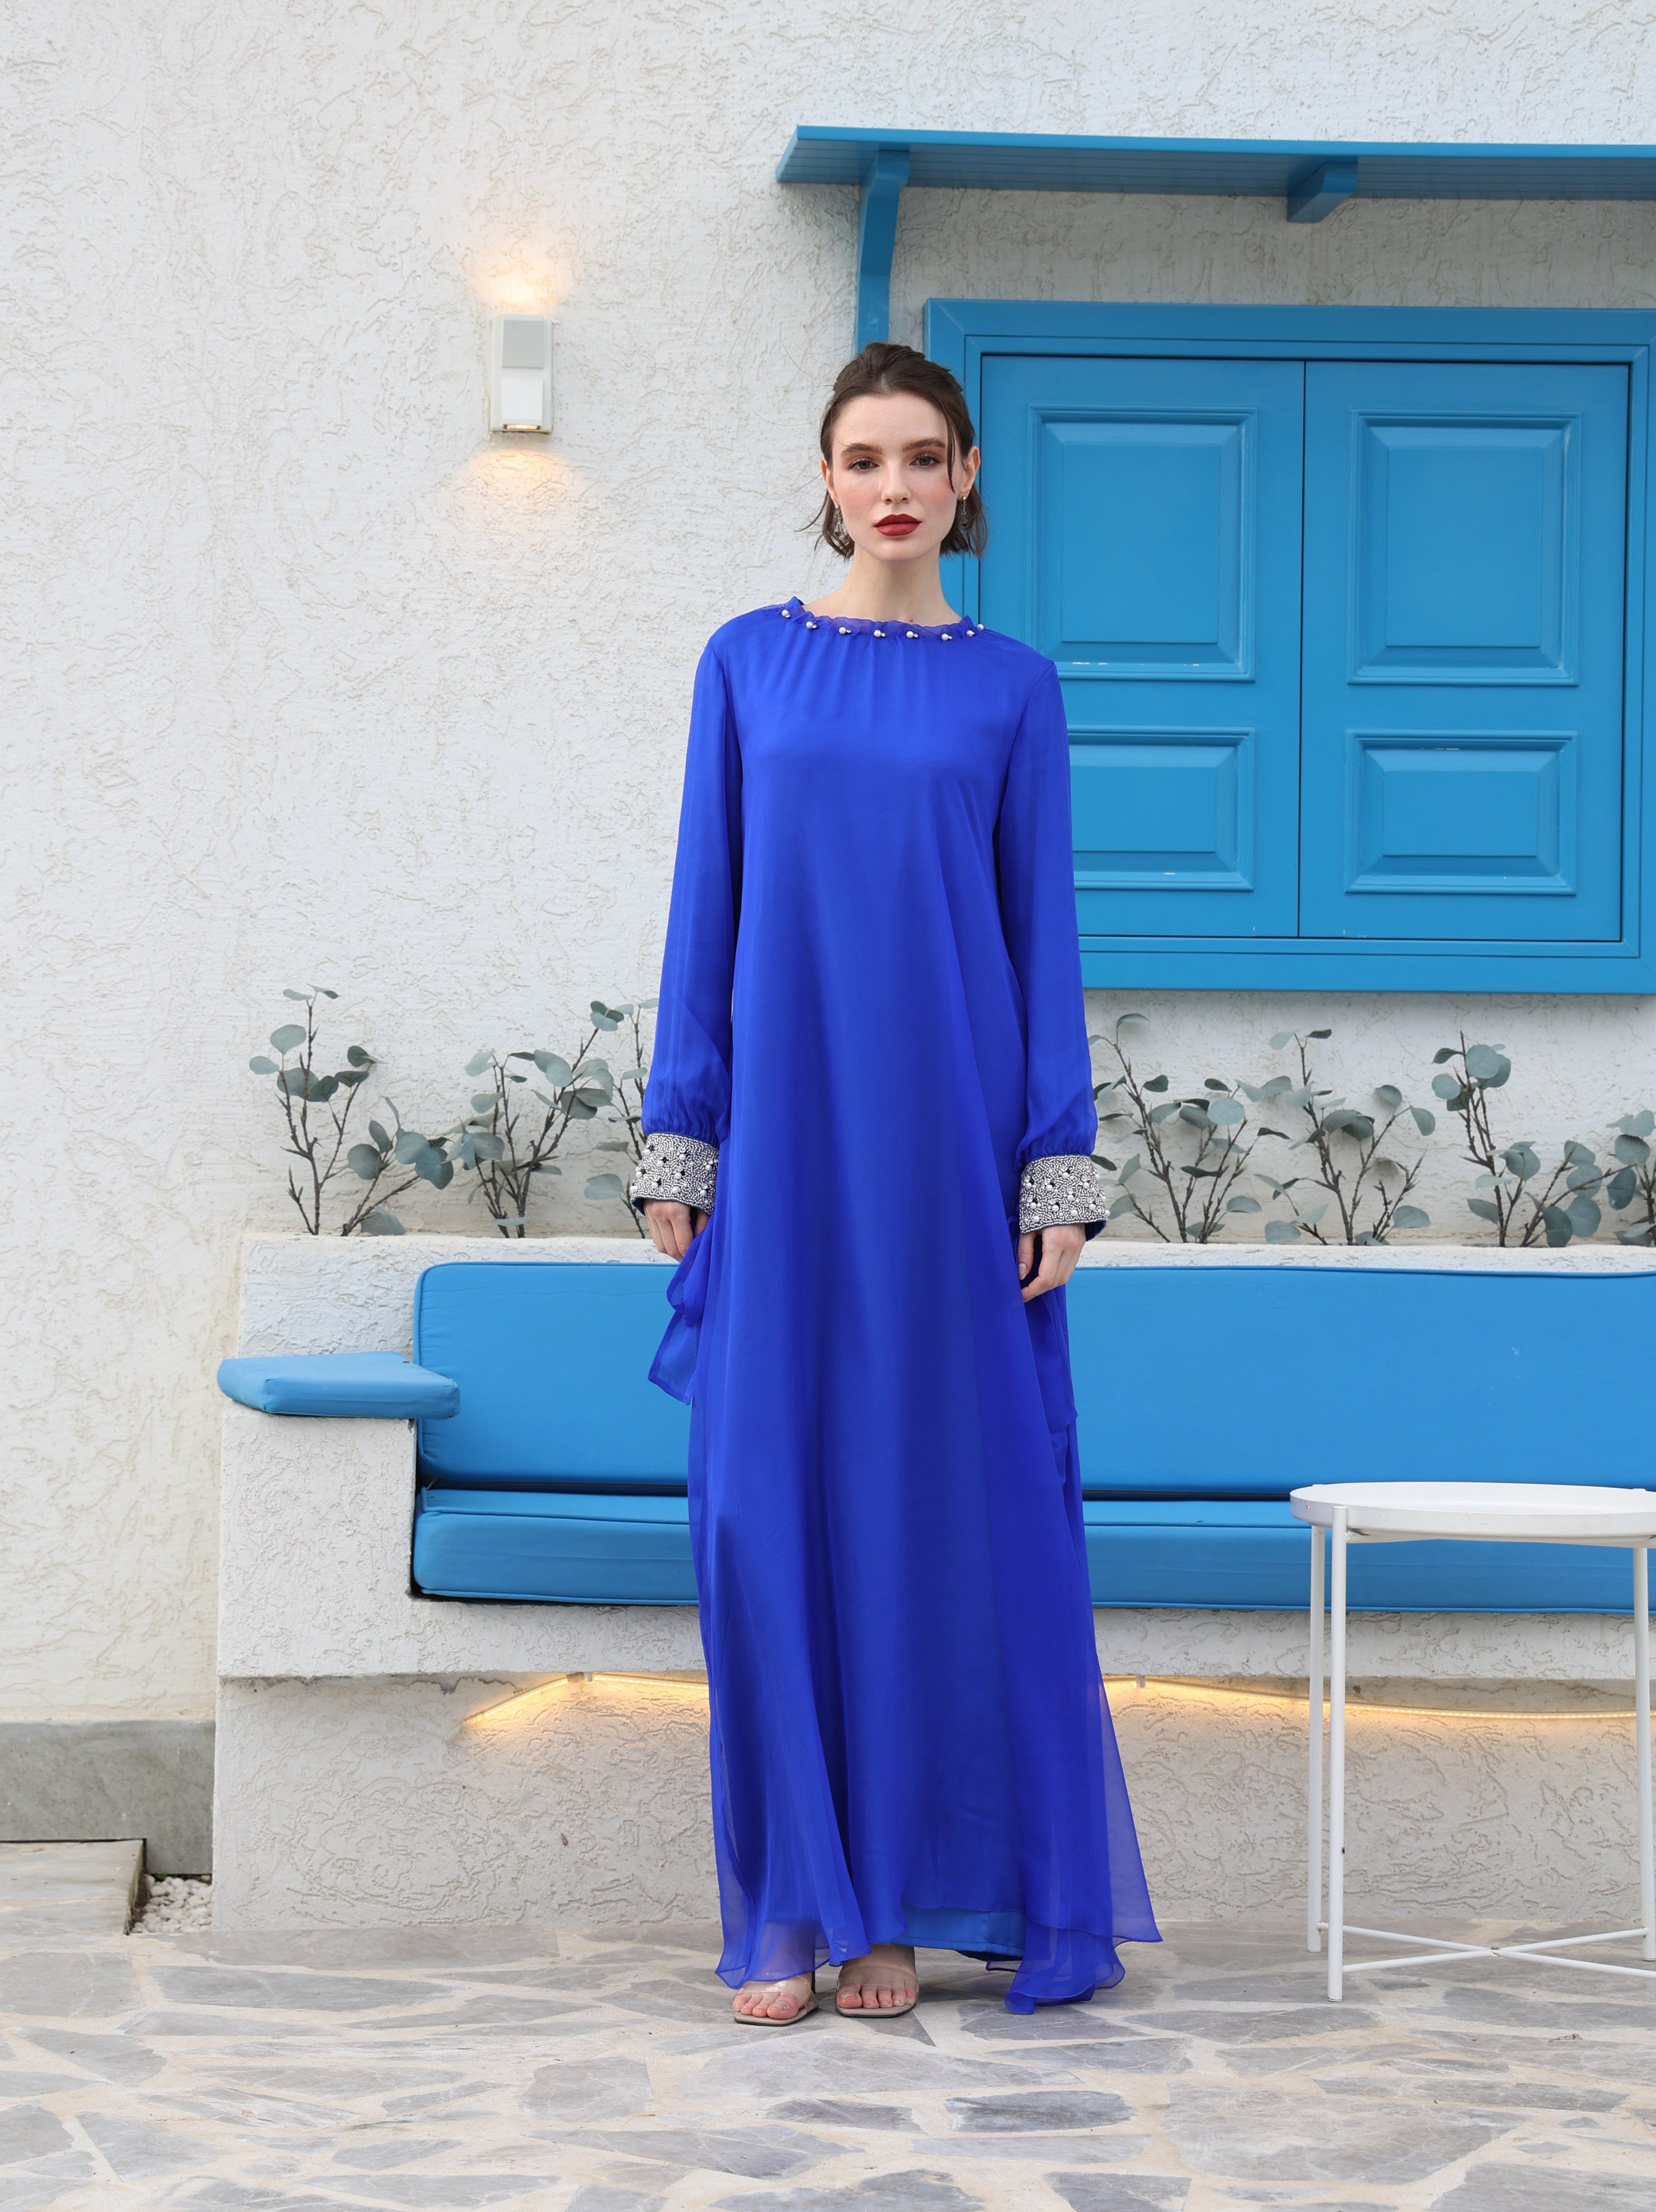 Soft HK Dress in Electric Blue